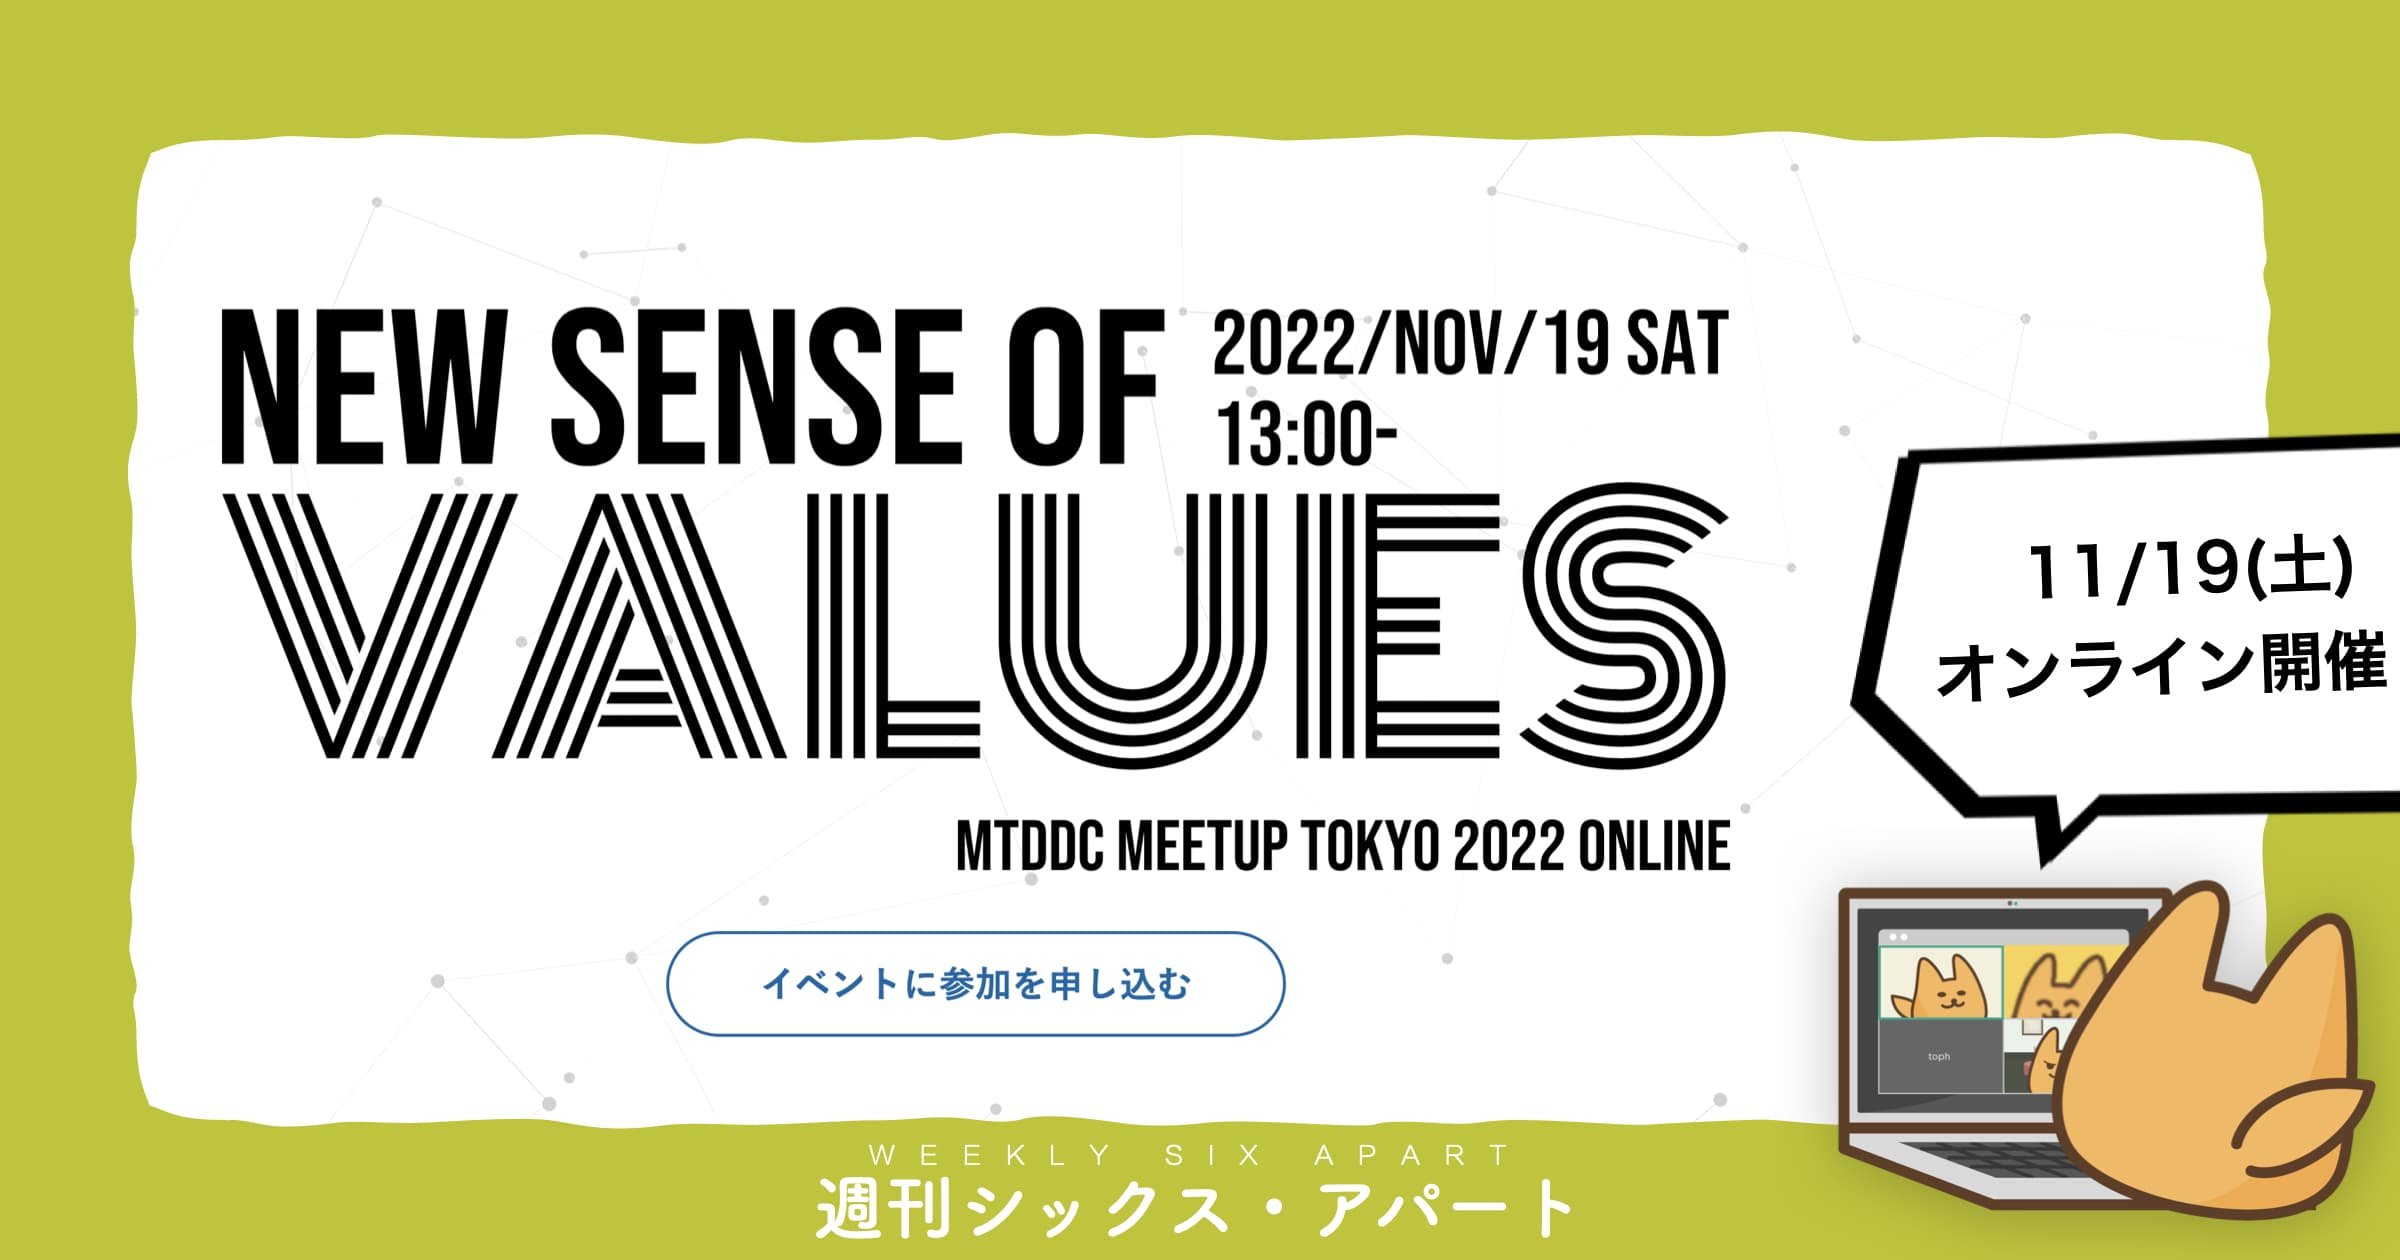 11/19開催「MTDDC Meetup TOKYO 2022」、シックス・アパートのセッション紹介  #週刊SA